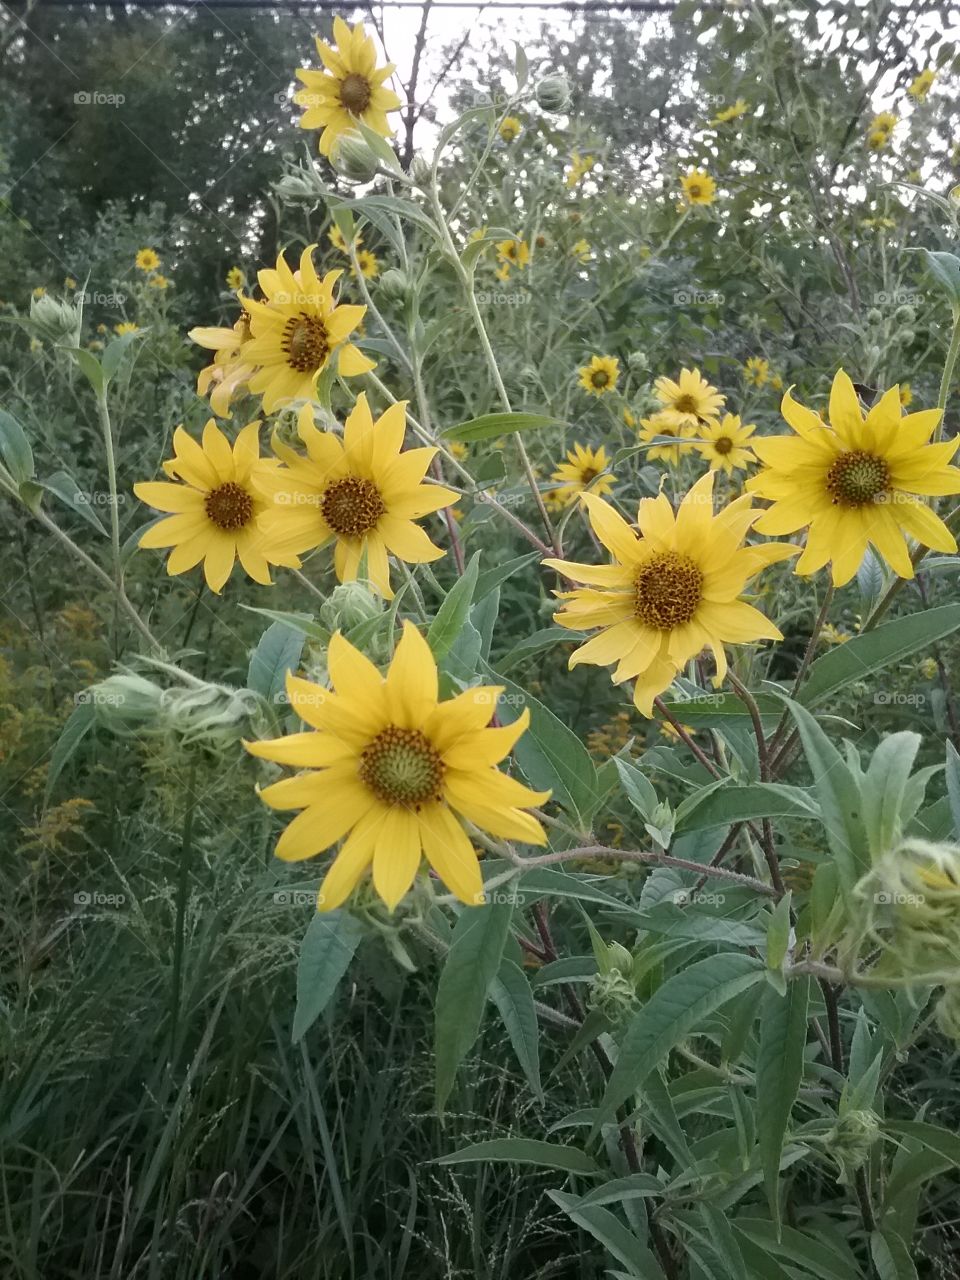 Baby Sunflowers